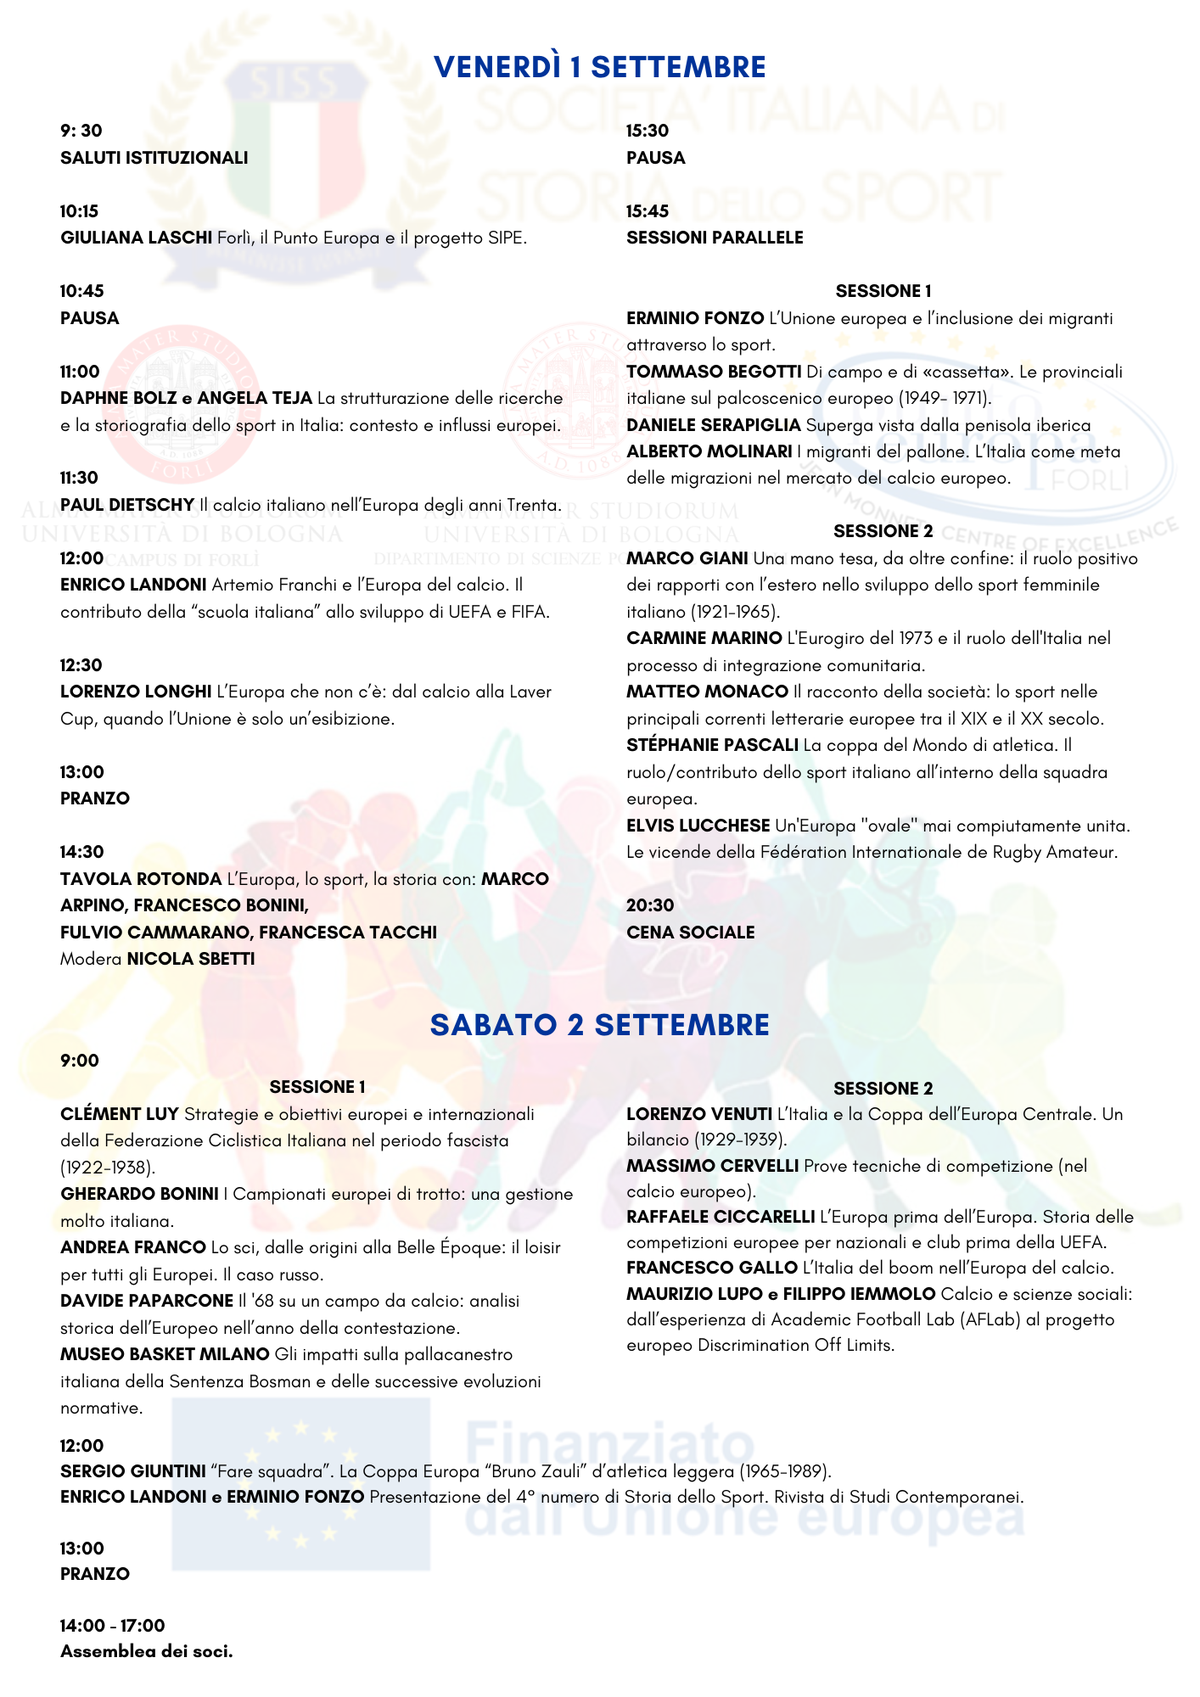 Programma dell'XI Convegno Nazionale della Società Italiana di Storia dello Sport: "L'Europa nella Storia dello Sport Italiano".